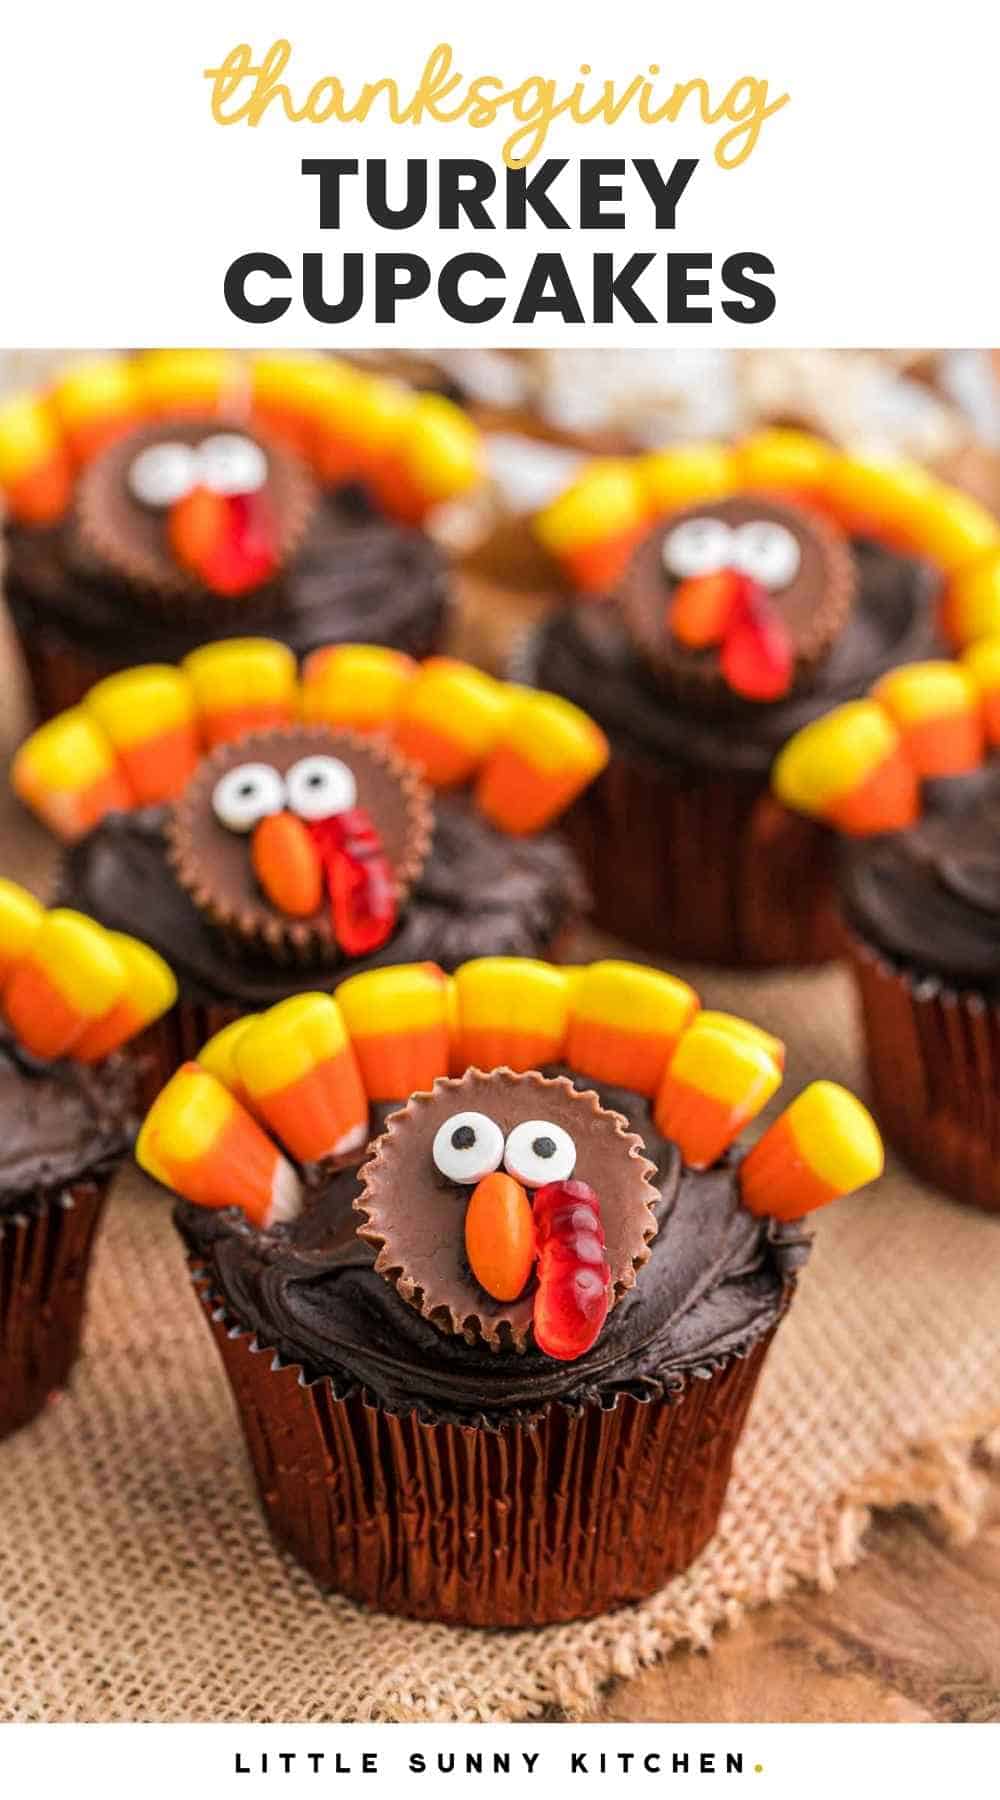 Turkey Cupcakes Recipe - Fun Thanksgiving Idea! | Little Sunny Kitchen